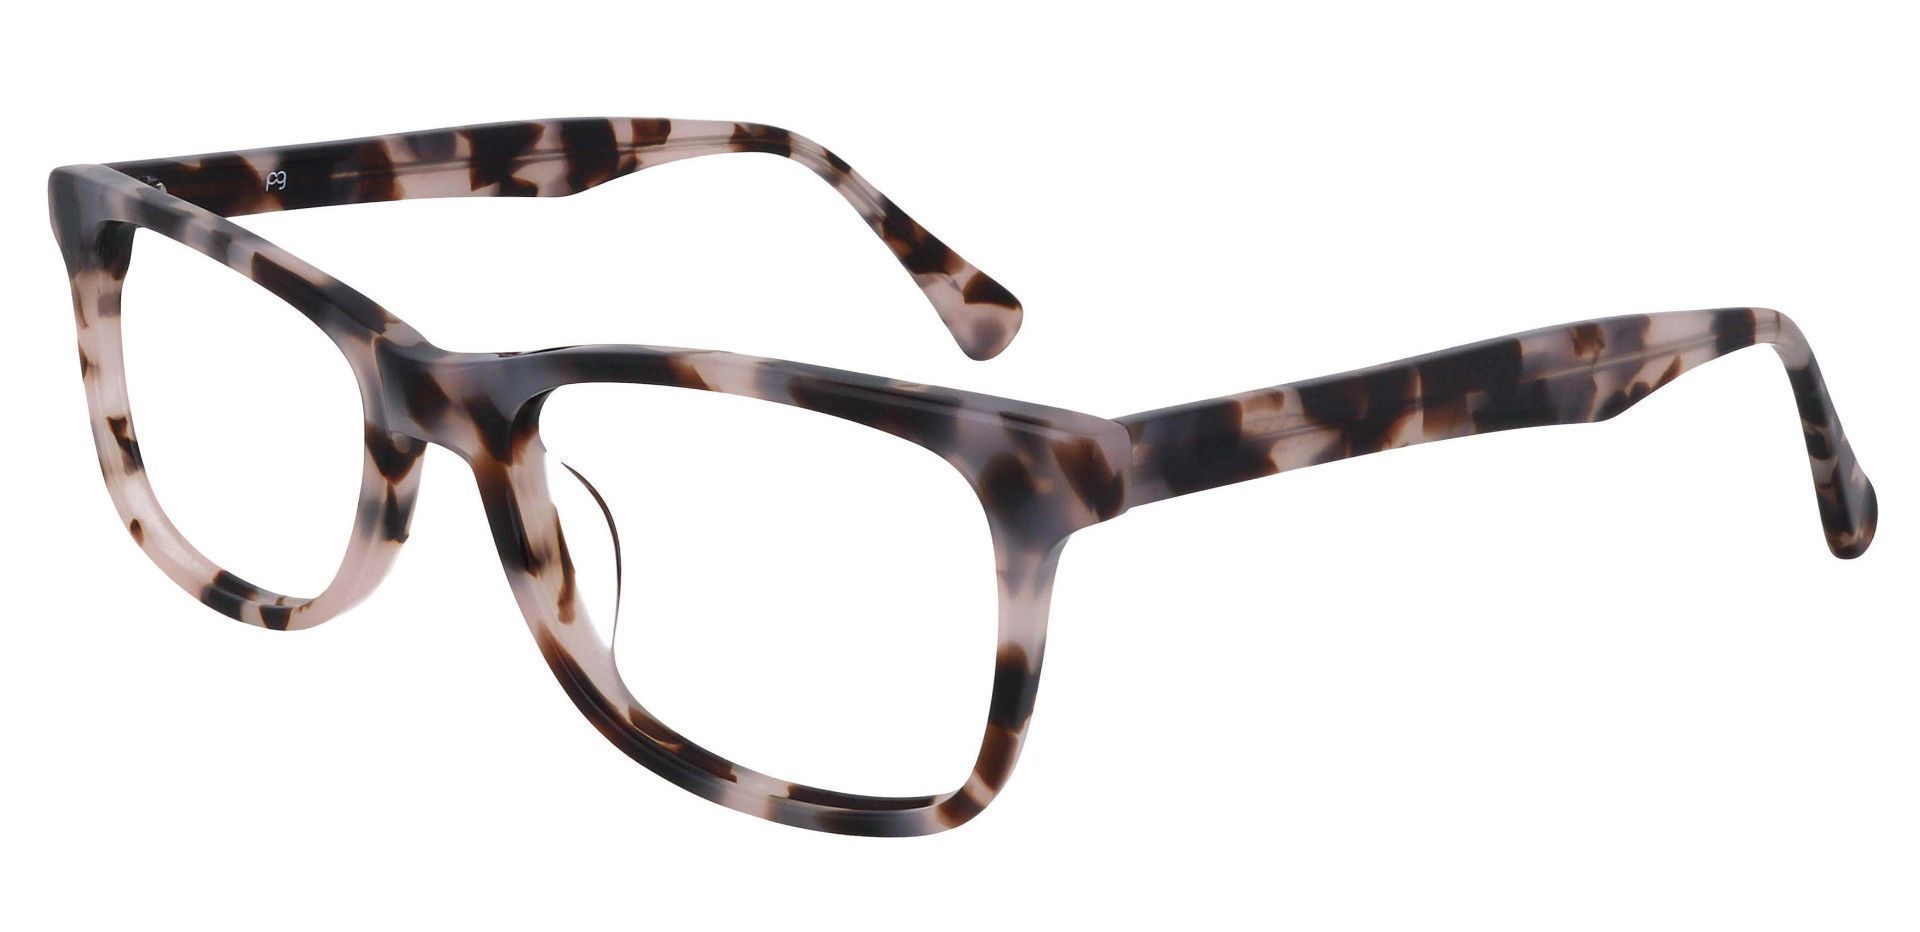 Juno Rectangle Prescription Glasses - Tortoise | Women's Eyeglasses ...